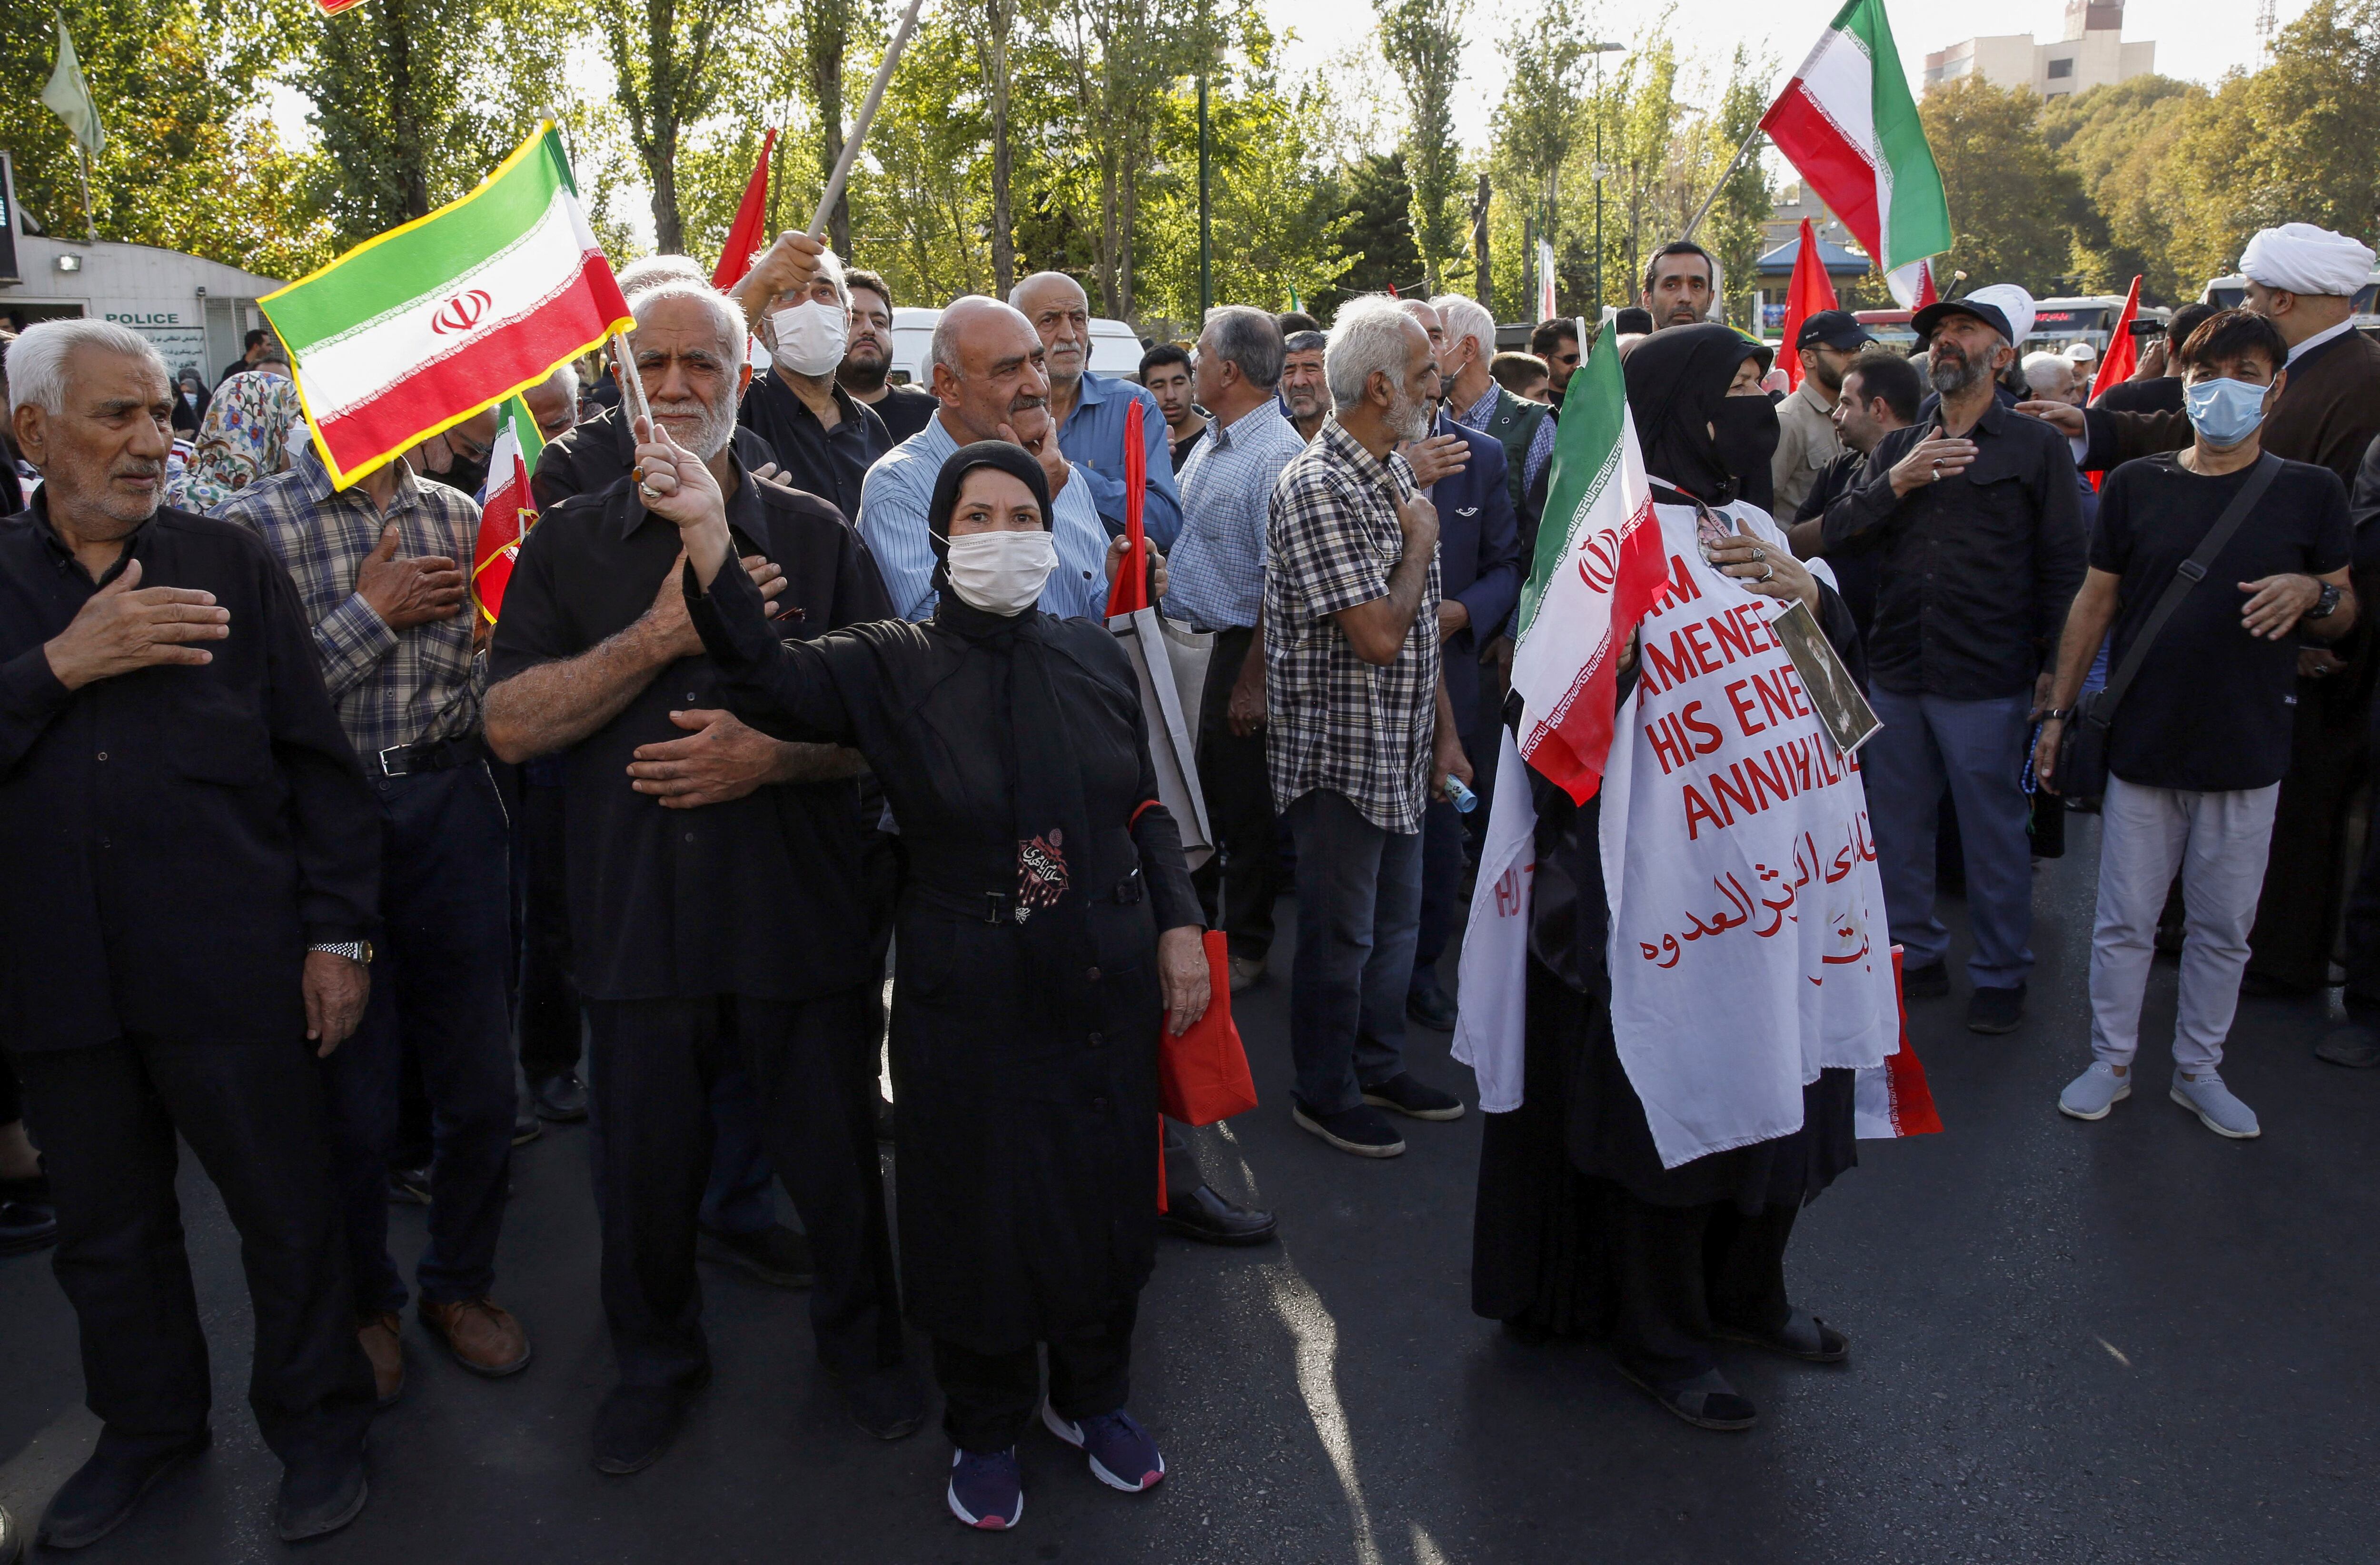 La política del velo obligatorio fue uno de los principales temas de la campaña presidencial en la República Islámica de Irán. En 2022, este tema llevó a muchos iranís a manifestarse por el encarcelamiento y la muerte de Mahsa Amini, quien desobedecía esta política. Foto: AFP